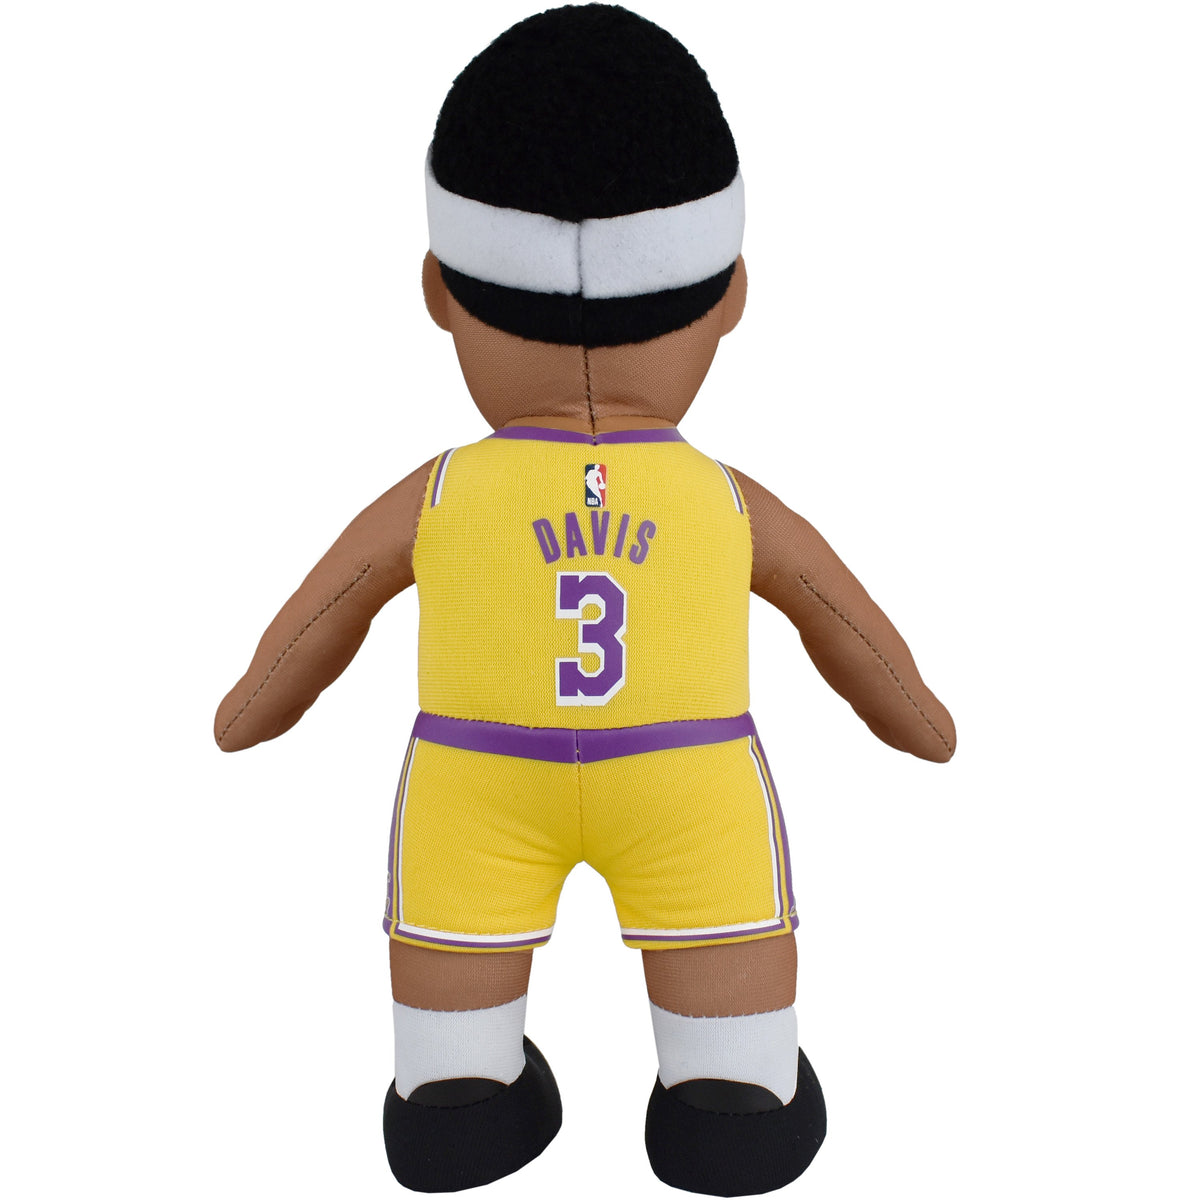 Los Angeles Lakers Bundle: Lebron James &amp; Anthony Davis 10&quot; Plush Figures